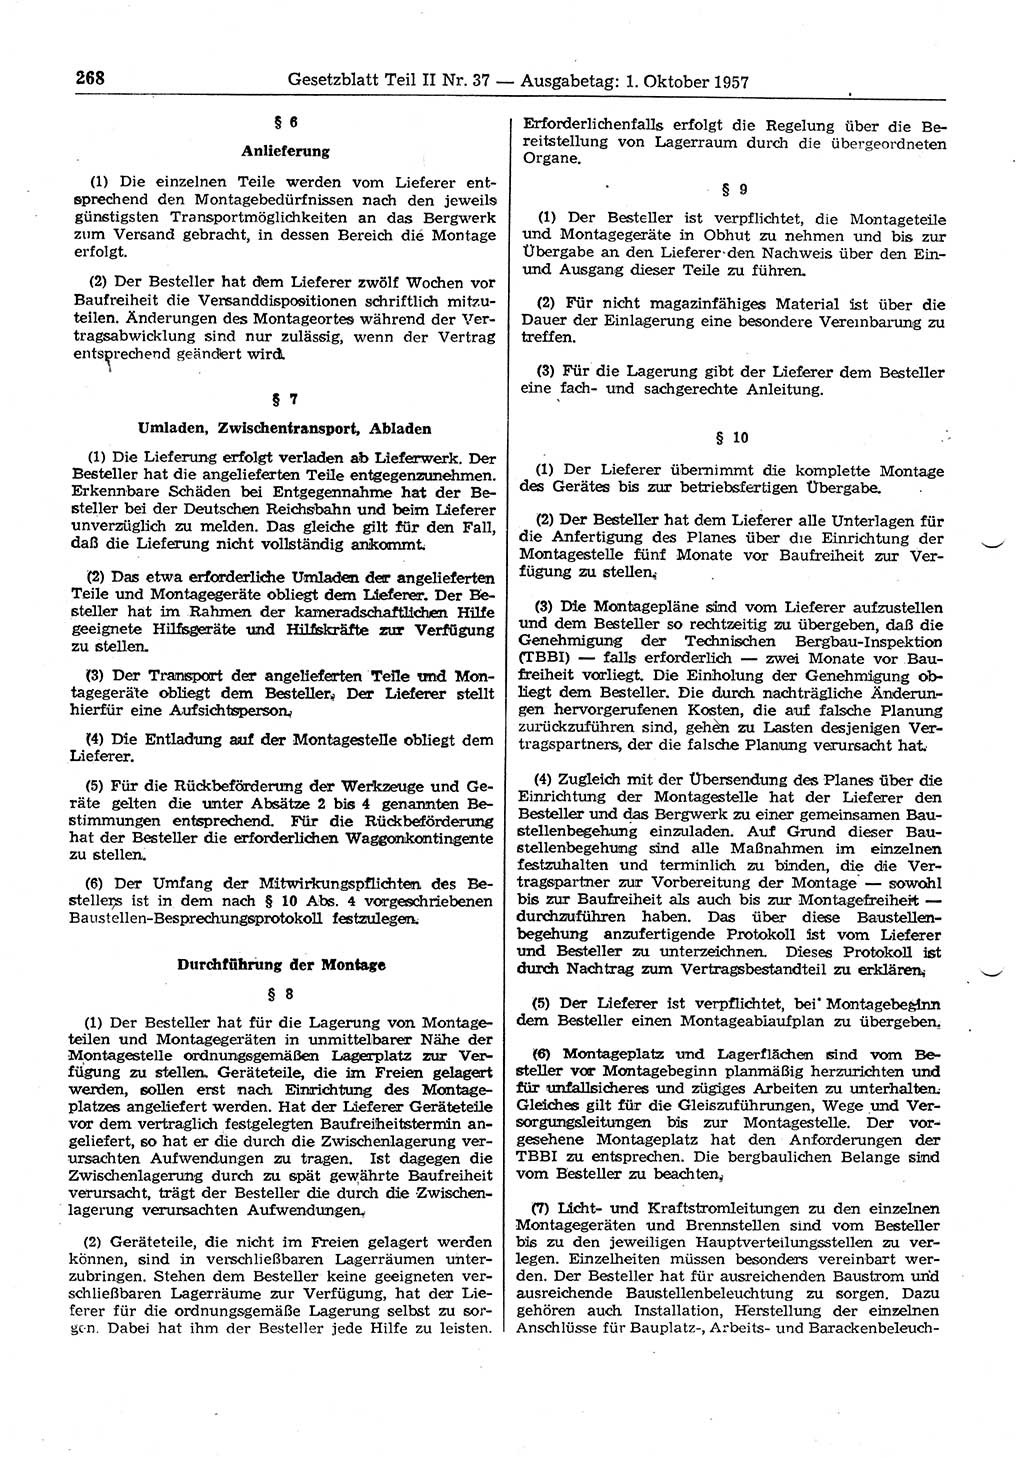 Gesetzblatt (GBl.) der Deutschen Demokratischen Republik (DDR) Teil ⅠⅠ 1957, Seite 268 (GBl. DDR ⅠⅠ 1957, S. 268)